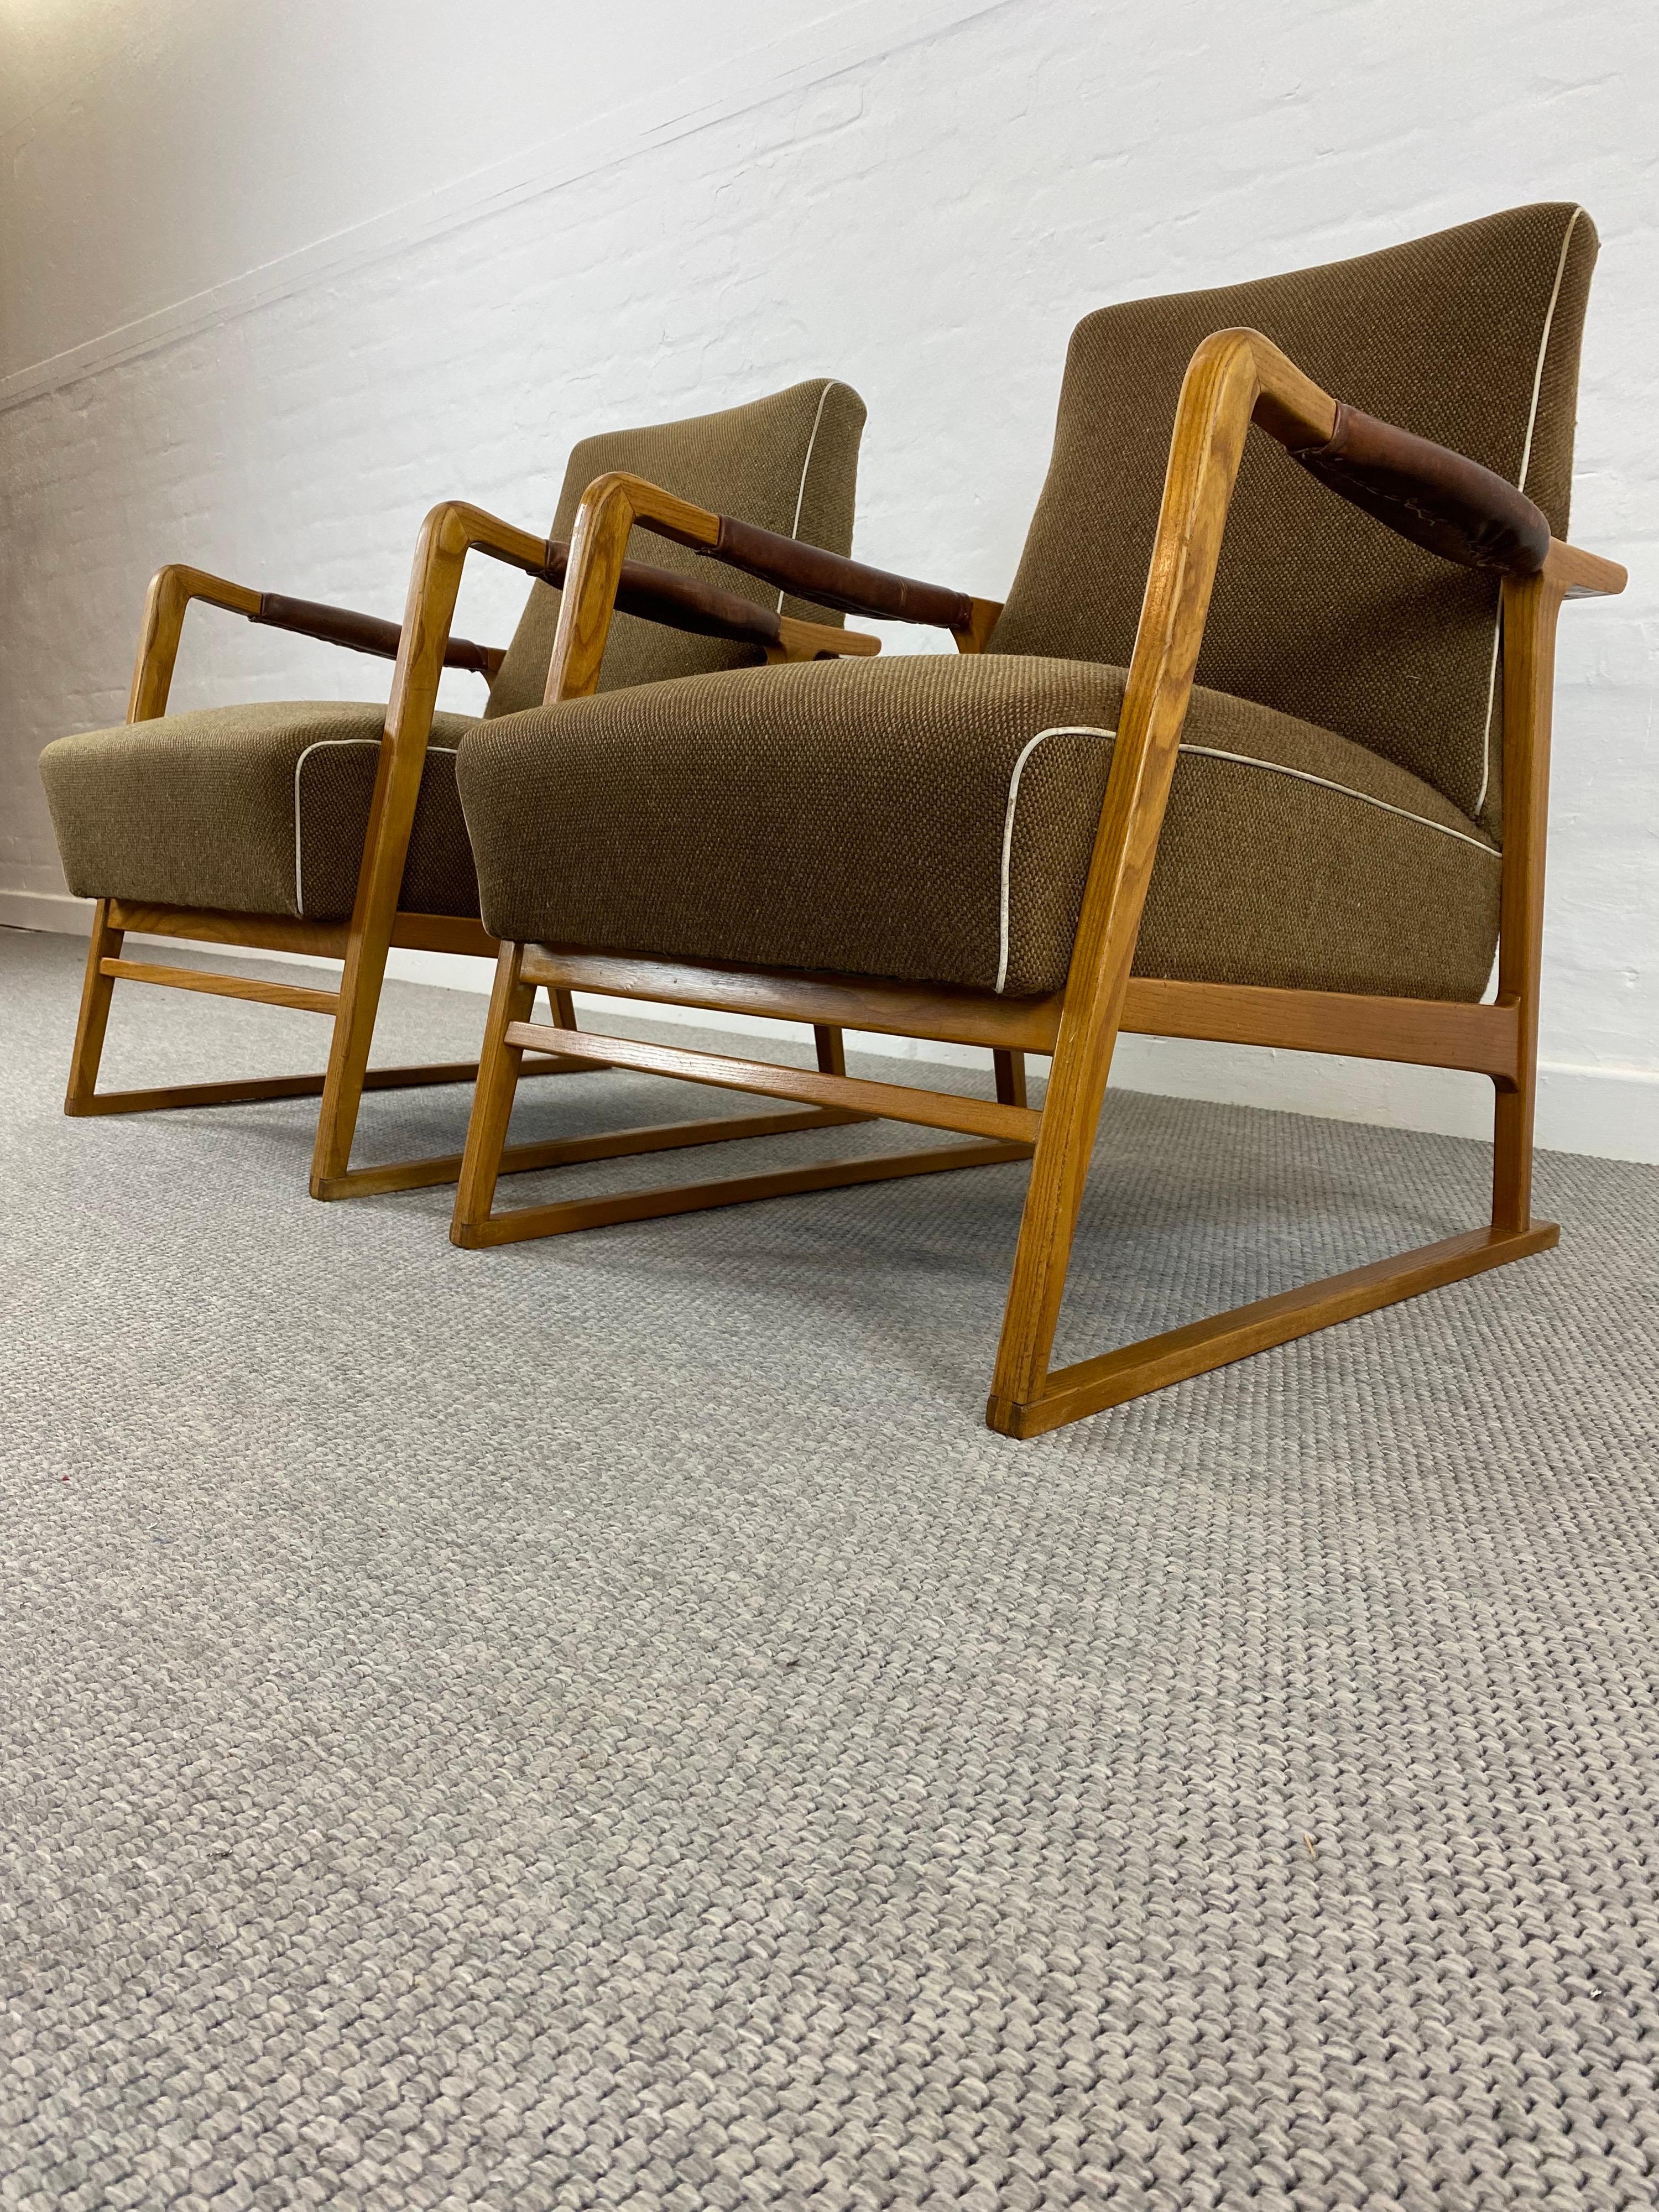 Ein sehr seltenes Paar WK-Sessel aus der Mitte des Jahrhunderts mit Kufen aus massiver Esche.
Diese in den frühen 1950er Jahren für die Deutschen Werkstätten entworfenen Sessel haben eine außergewöhnliche Form mit Kufen, die für eine bessere